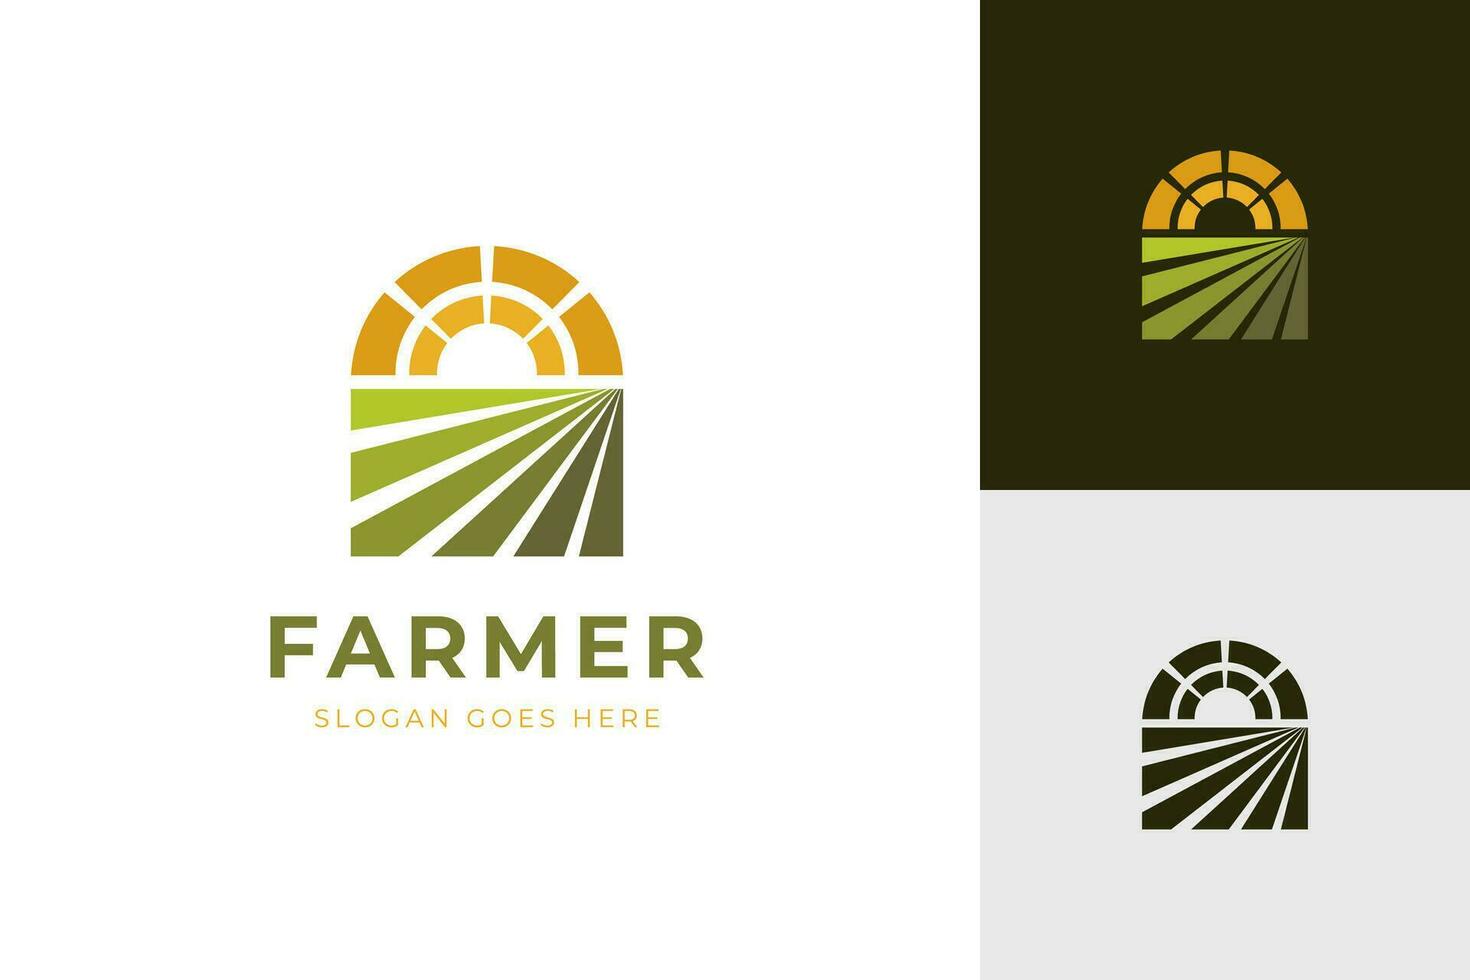 agricultura logo diseño para agronomía, trigo granja, rural país agricultura campo, natural cosecha vector